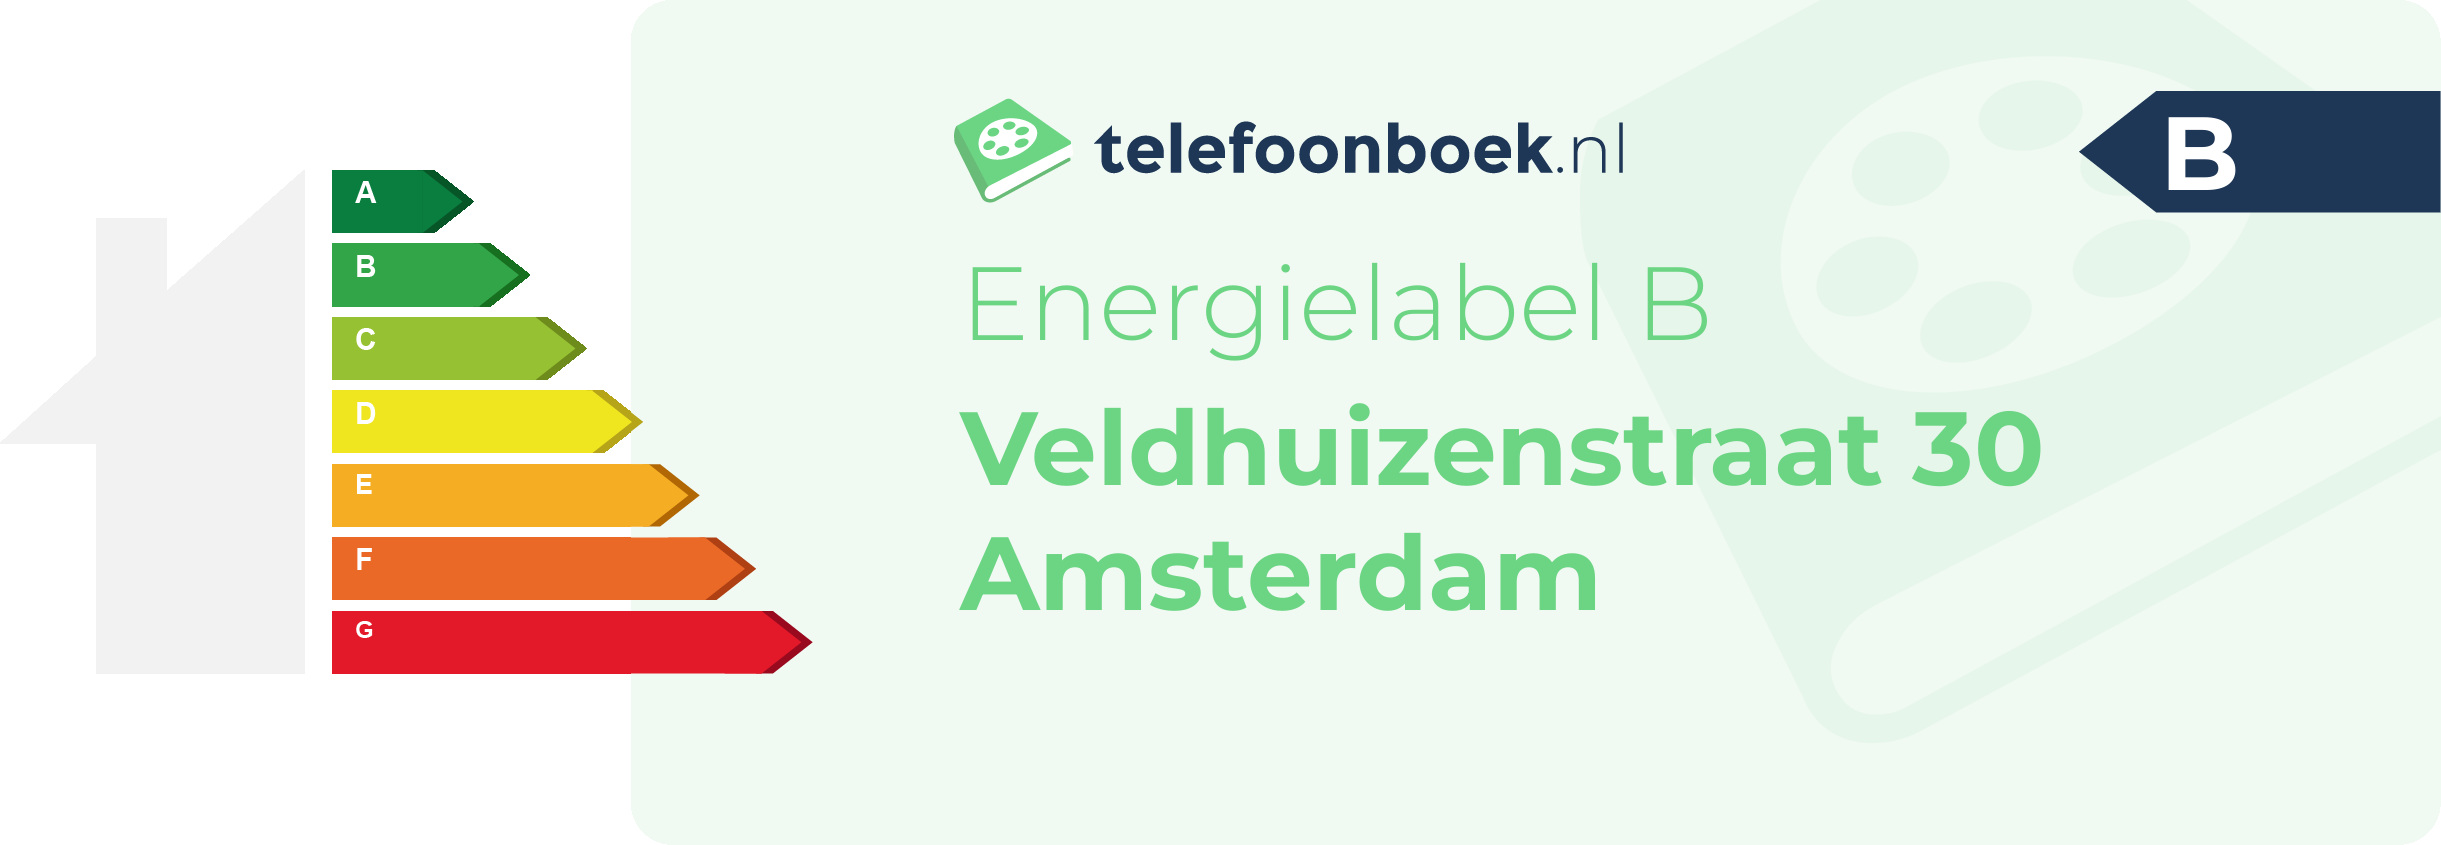 Energielabel Veldhuizenstraat 30 Amsterdam